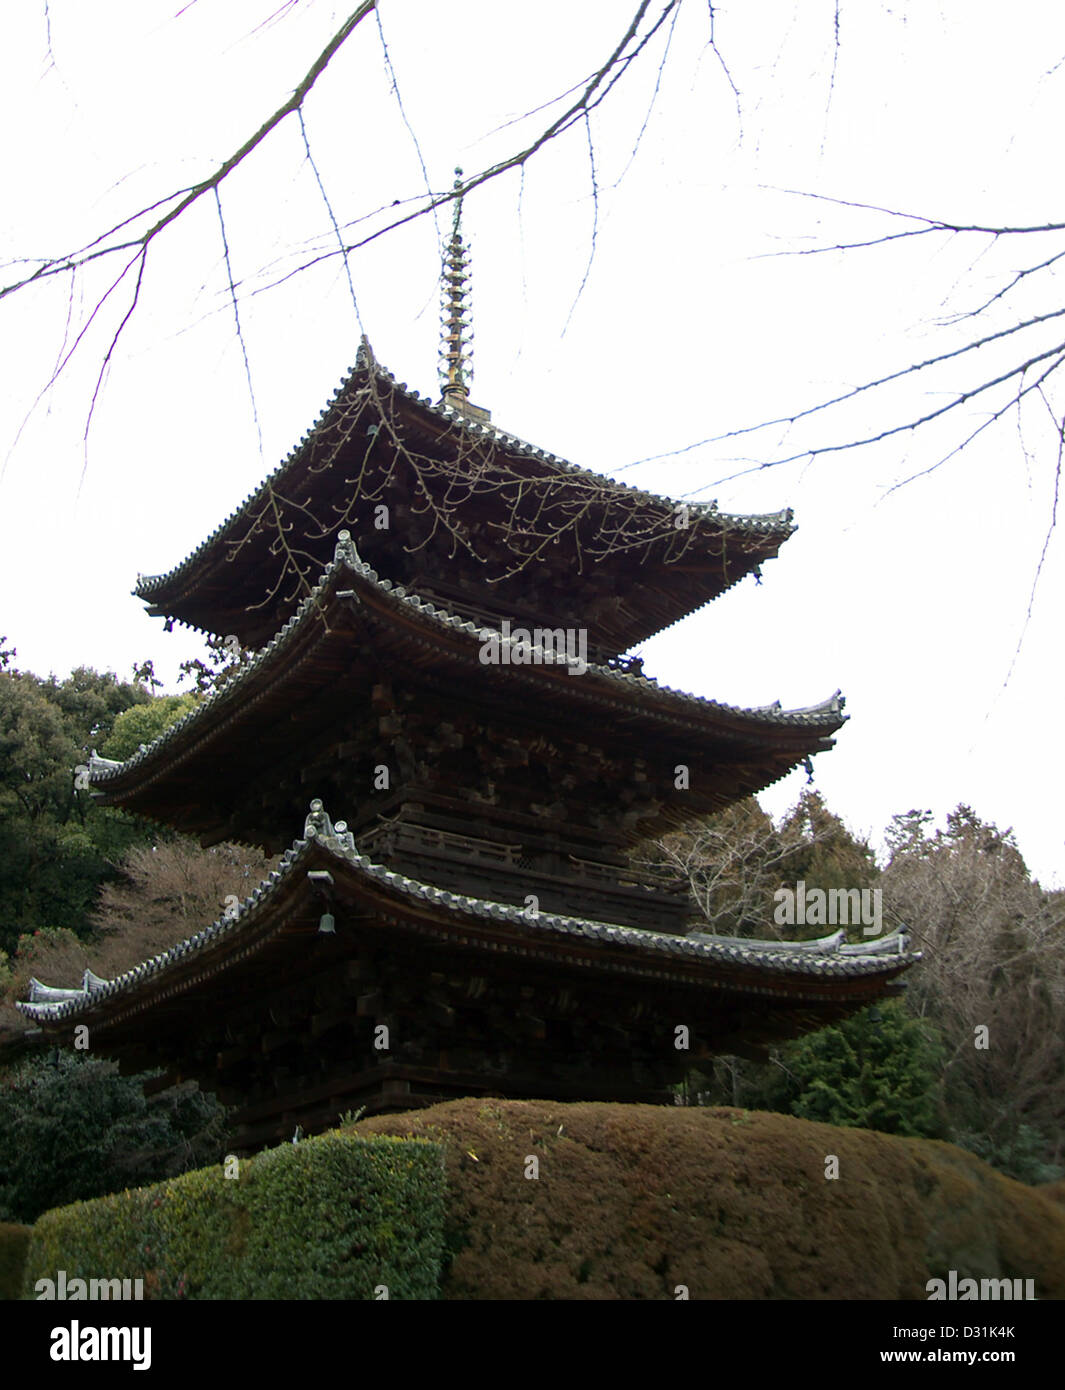 pagoda 三重塔 in the Tō-in 唐院 at Mii-dera, a Buddhist temple in Otsu, Shiga Prefecture, Japan. Stock Photo